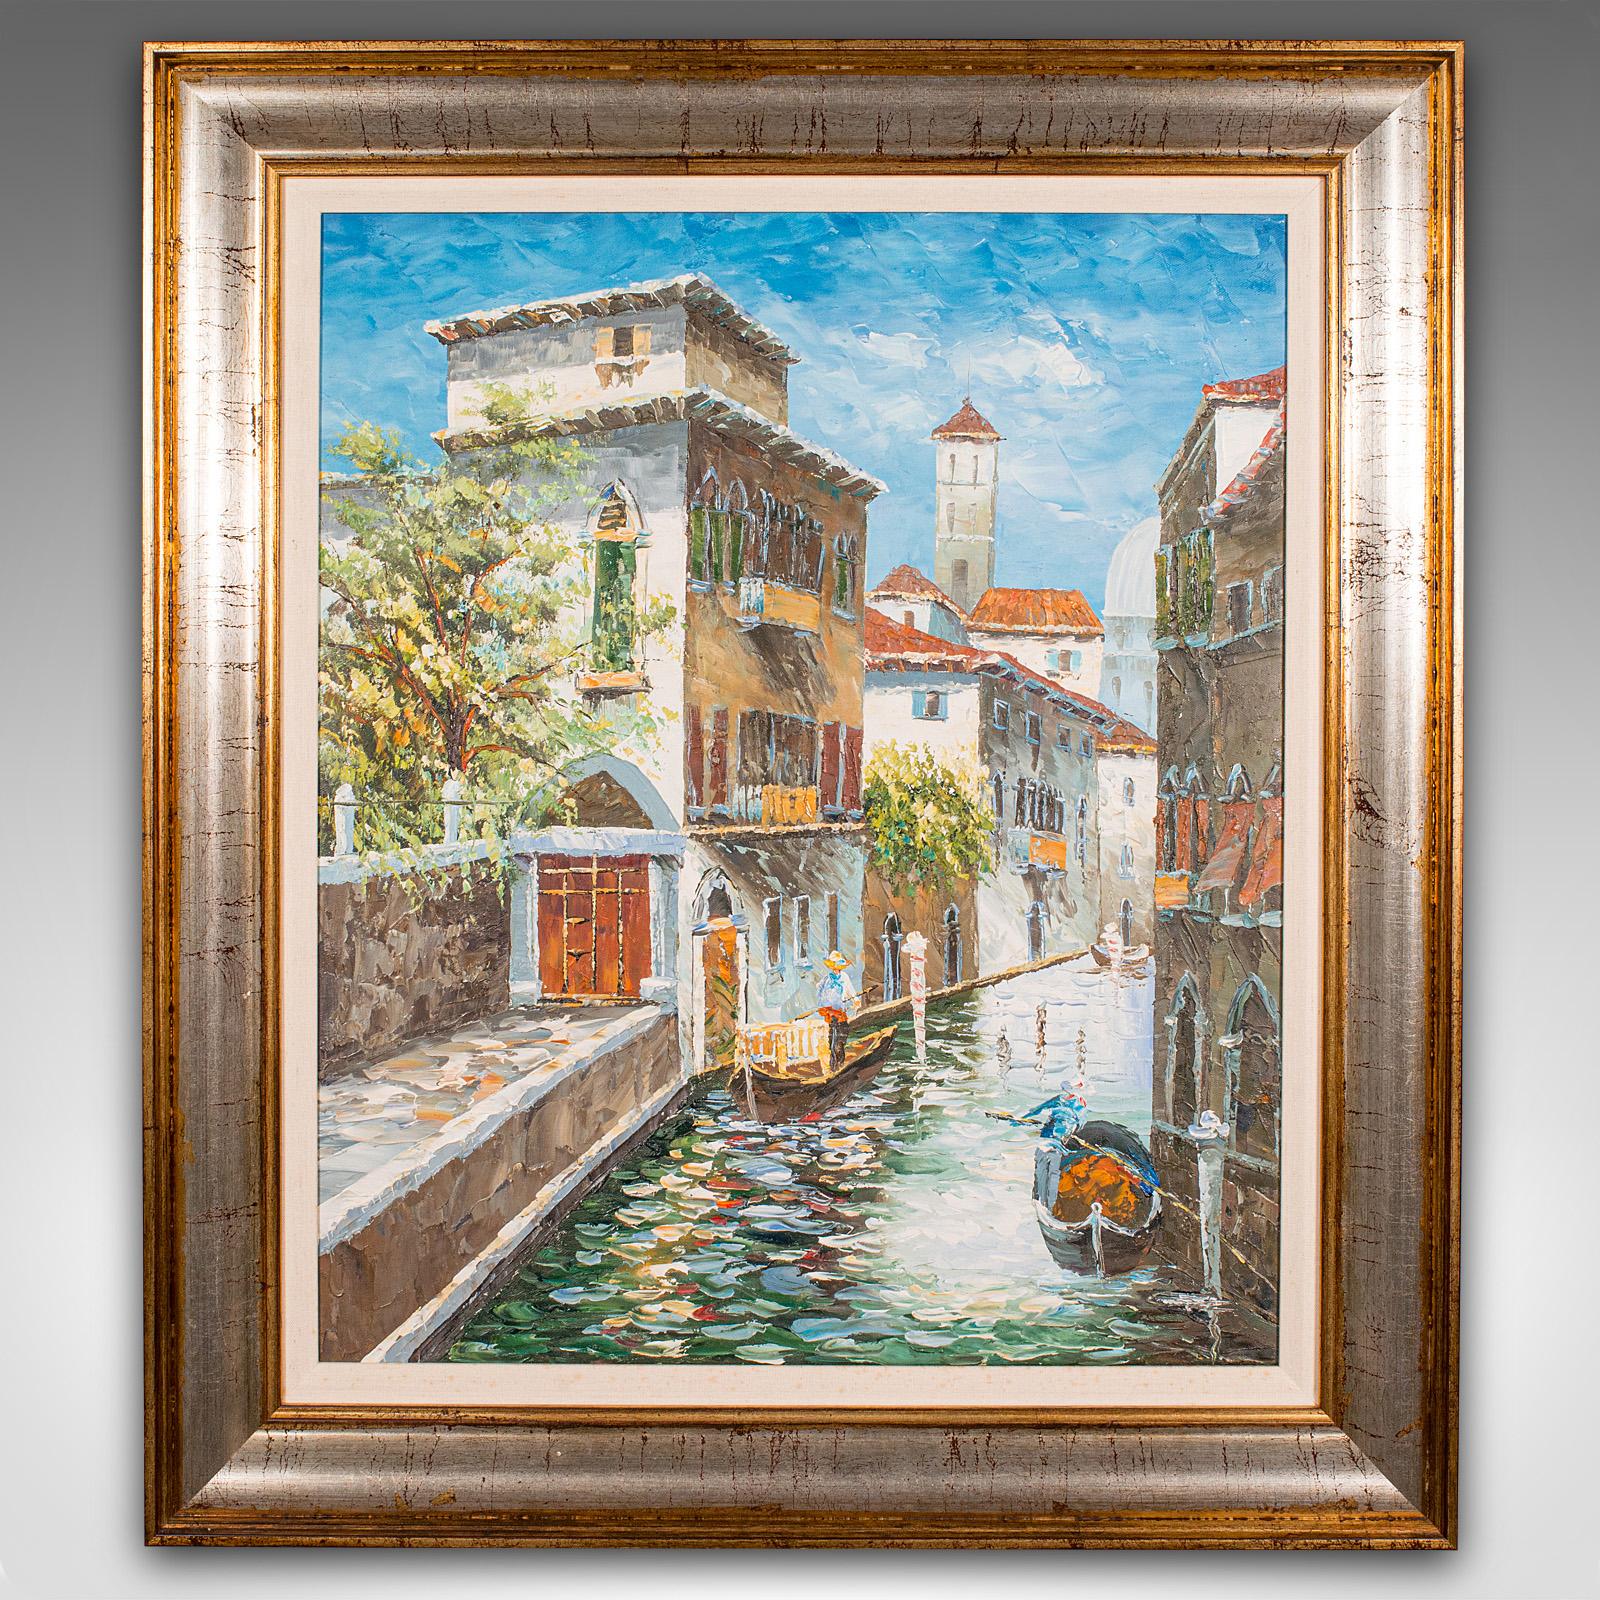 Il s'agit d'une peinture de canal vénitienne vintage. Une étude de Venise à l'huile sur toile de l'école CIRCA, datant de la fin du 20e siècle, vers 1980.

Scène de canal attrayante à l'huile, avec de belles couleurs
Présente une patine d'usage